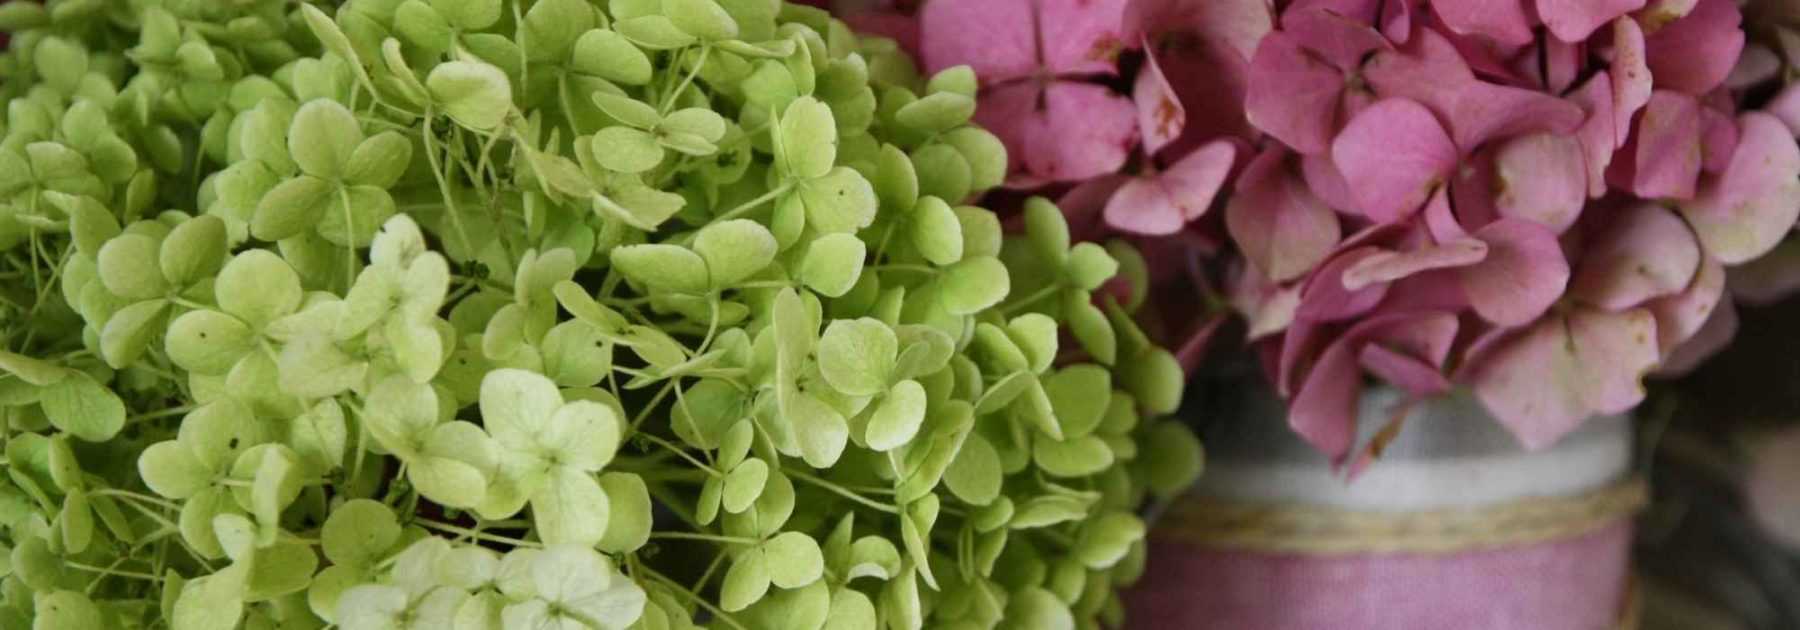 Comment faire sécher les fleurs d'hortensia - Tutoriel